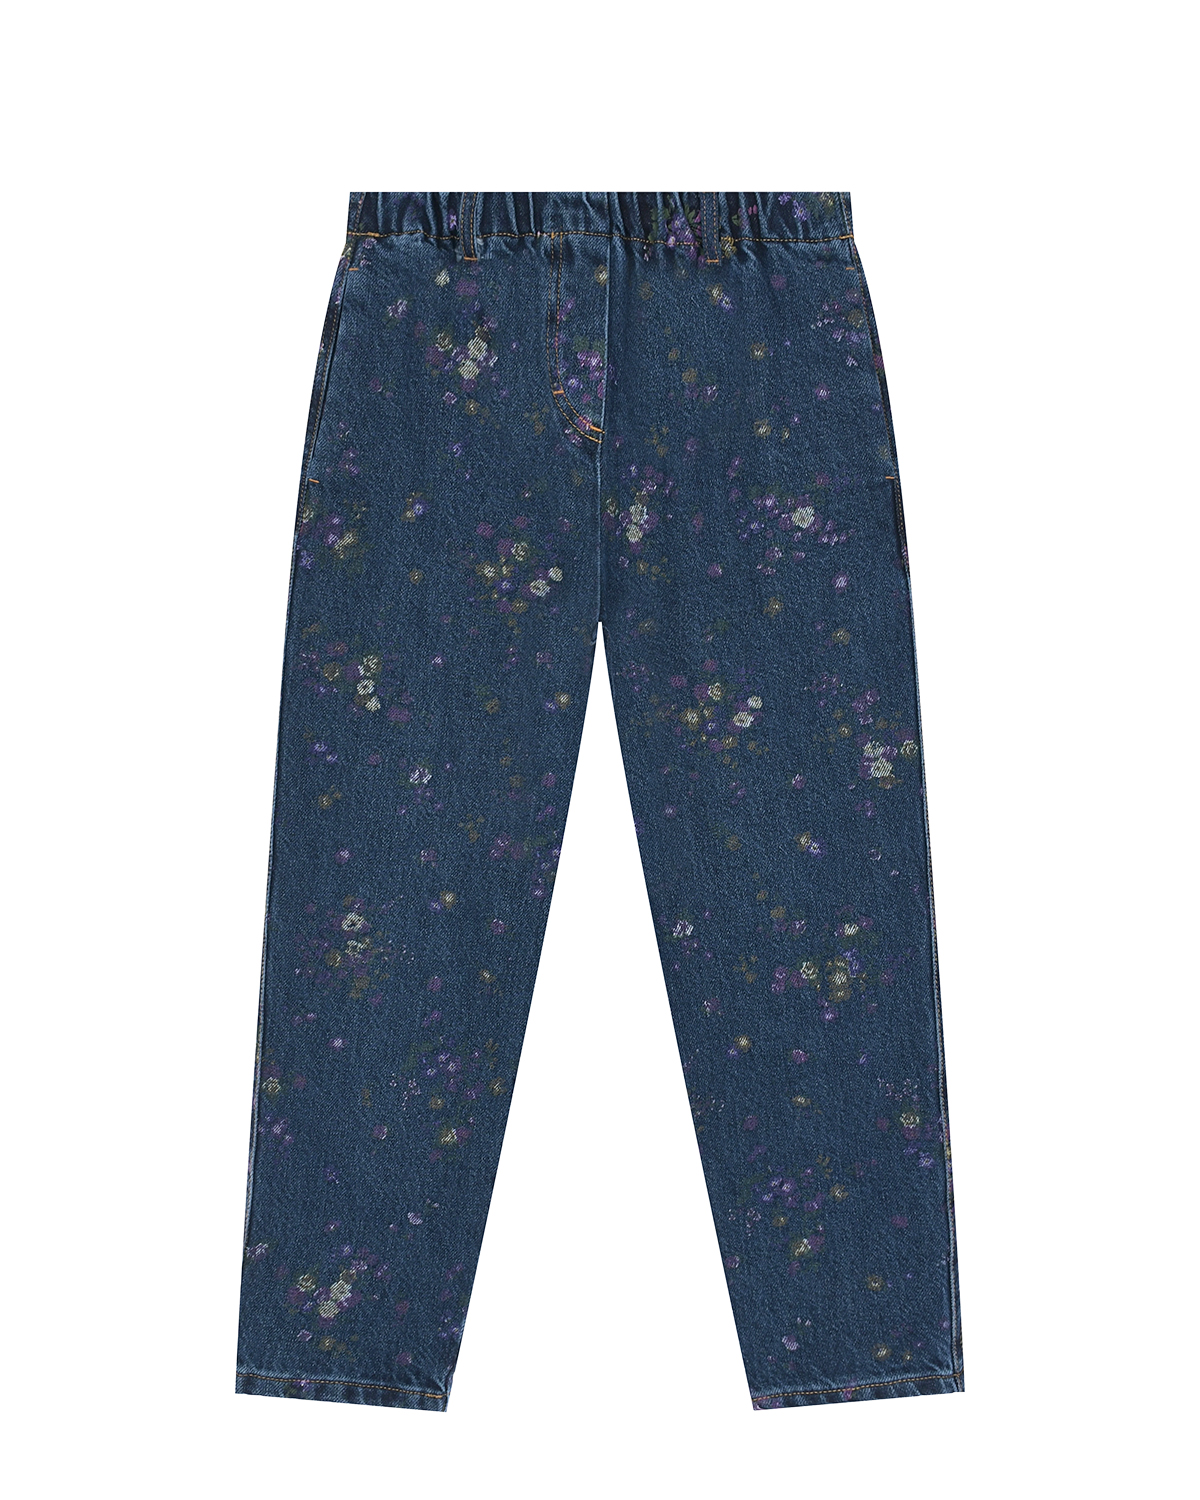 Синие джинсы с цветочным принтом Philosophy детские, размер 152 - фото 1